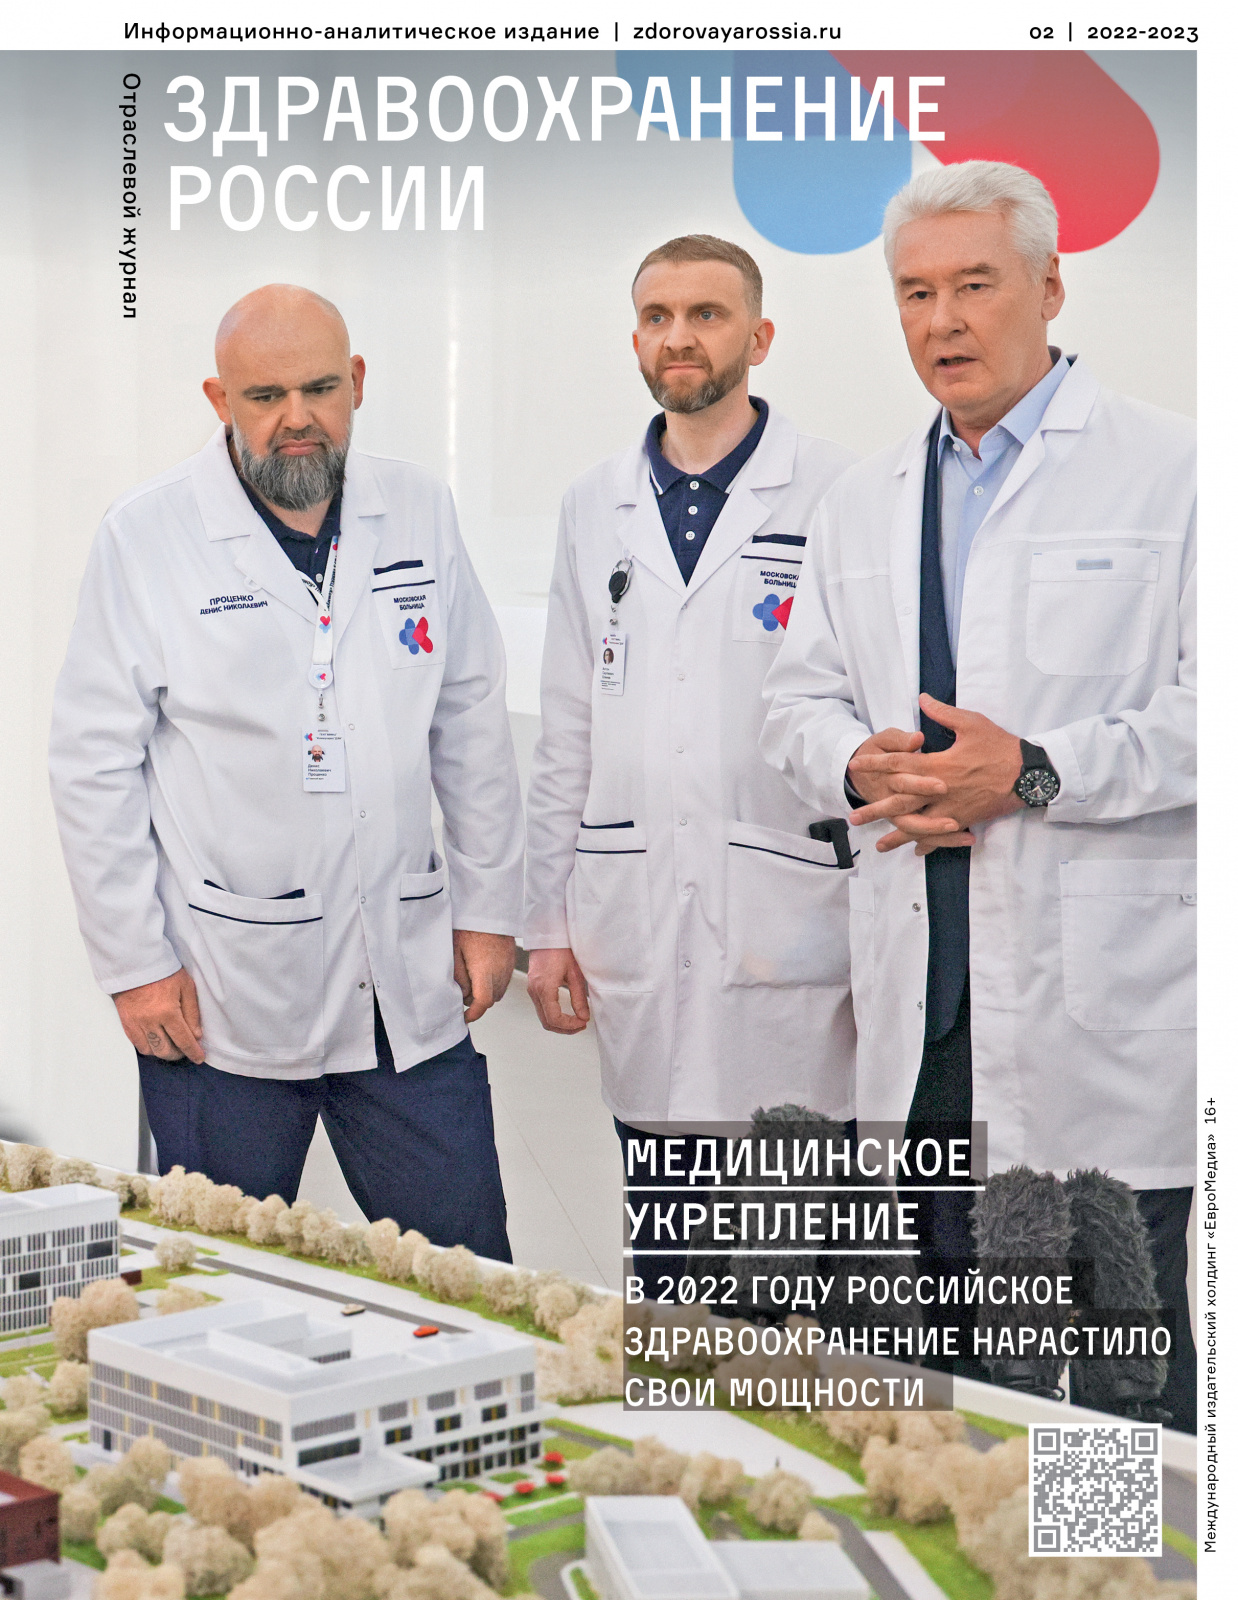 Как изменилась отечественная медицина в 2022 году, рассказал итоговый номер журнала «Здравоохранение России». ЕвроМедиа